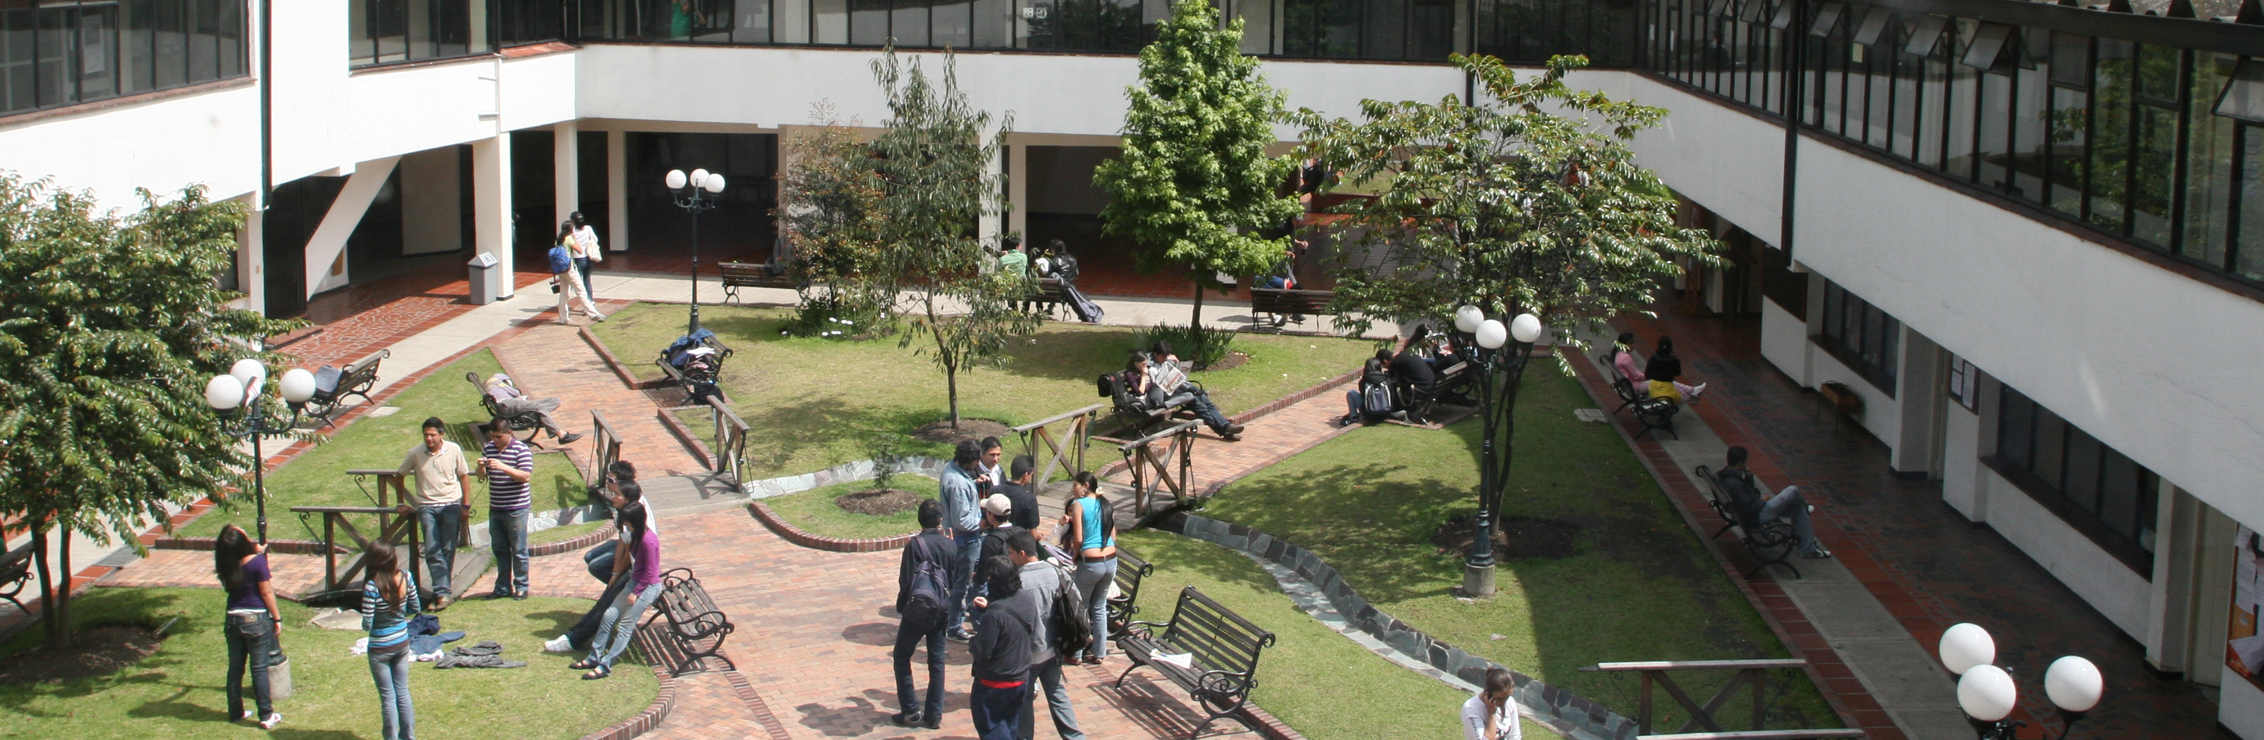 Facultad de ingenieria de la Universidad Central 2